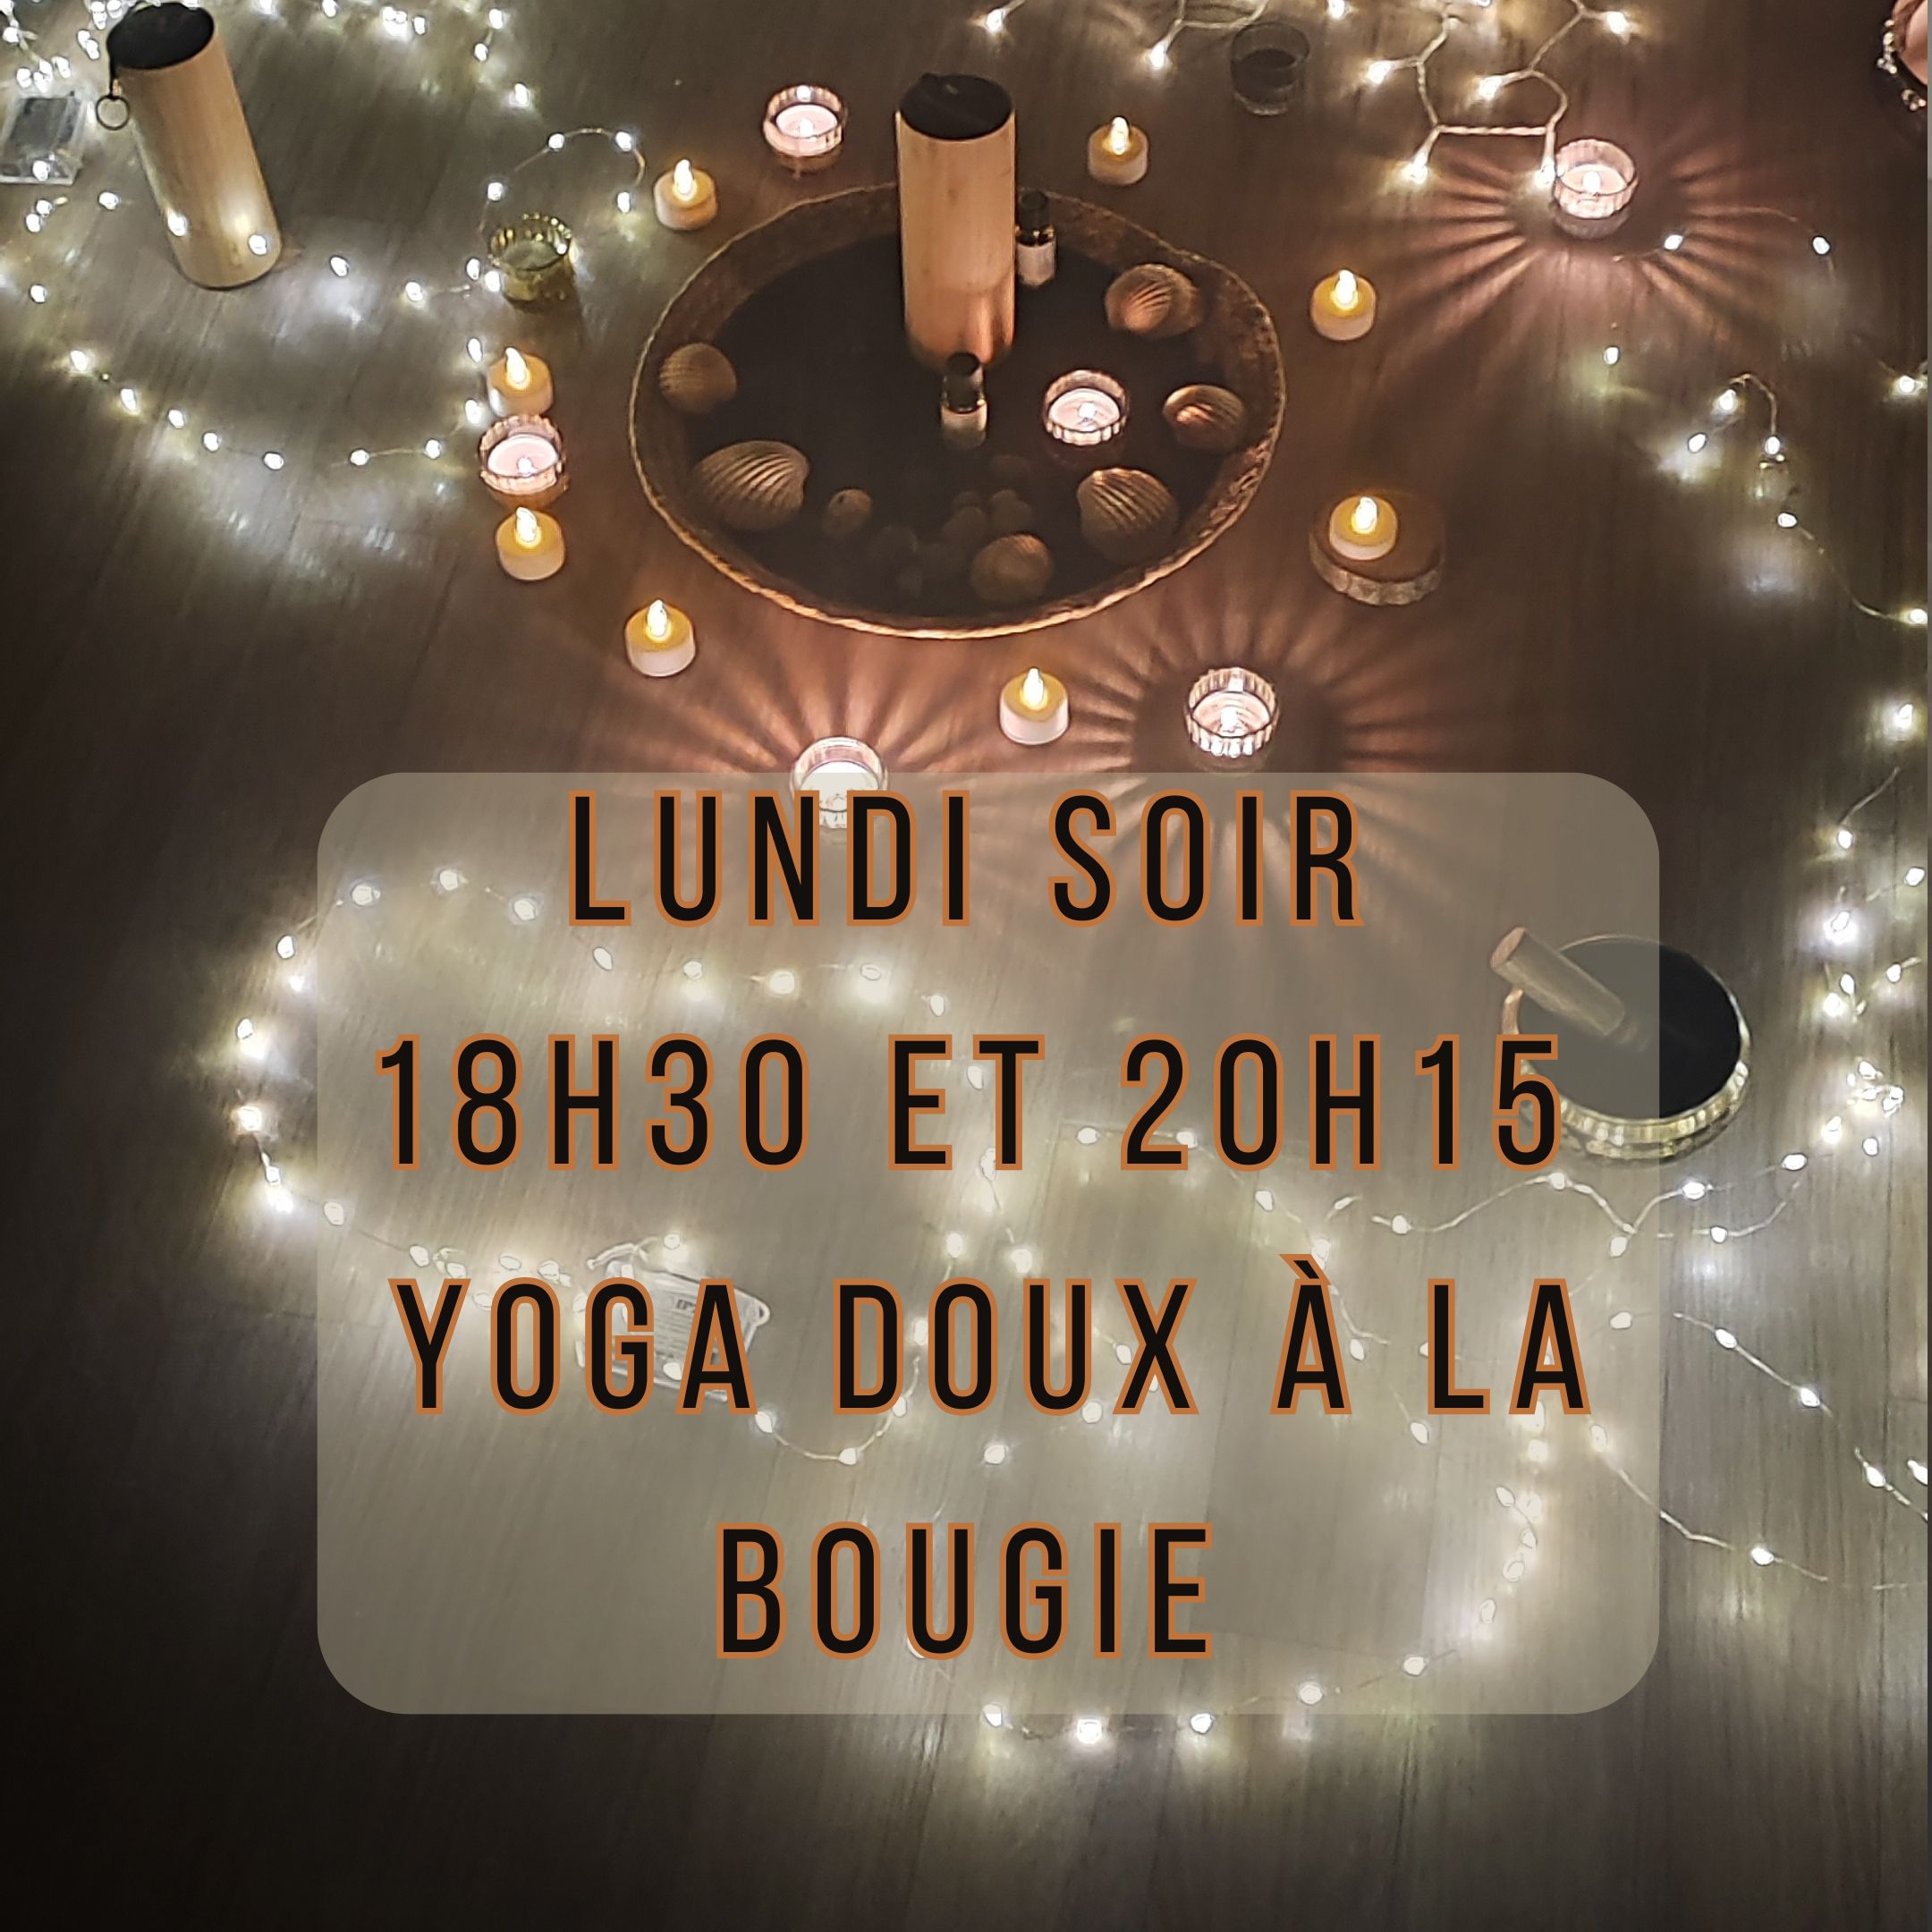 Yoga doux à la bougie – Ciboure Lundi 18h30 et 20H15 (6/05)